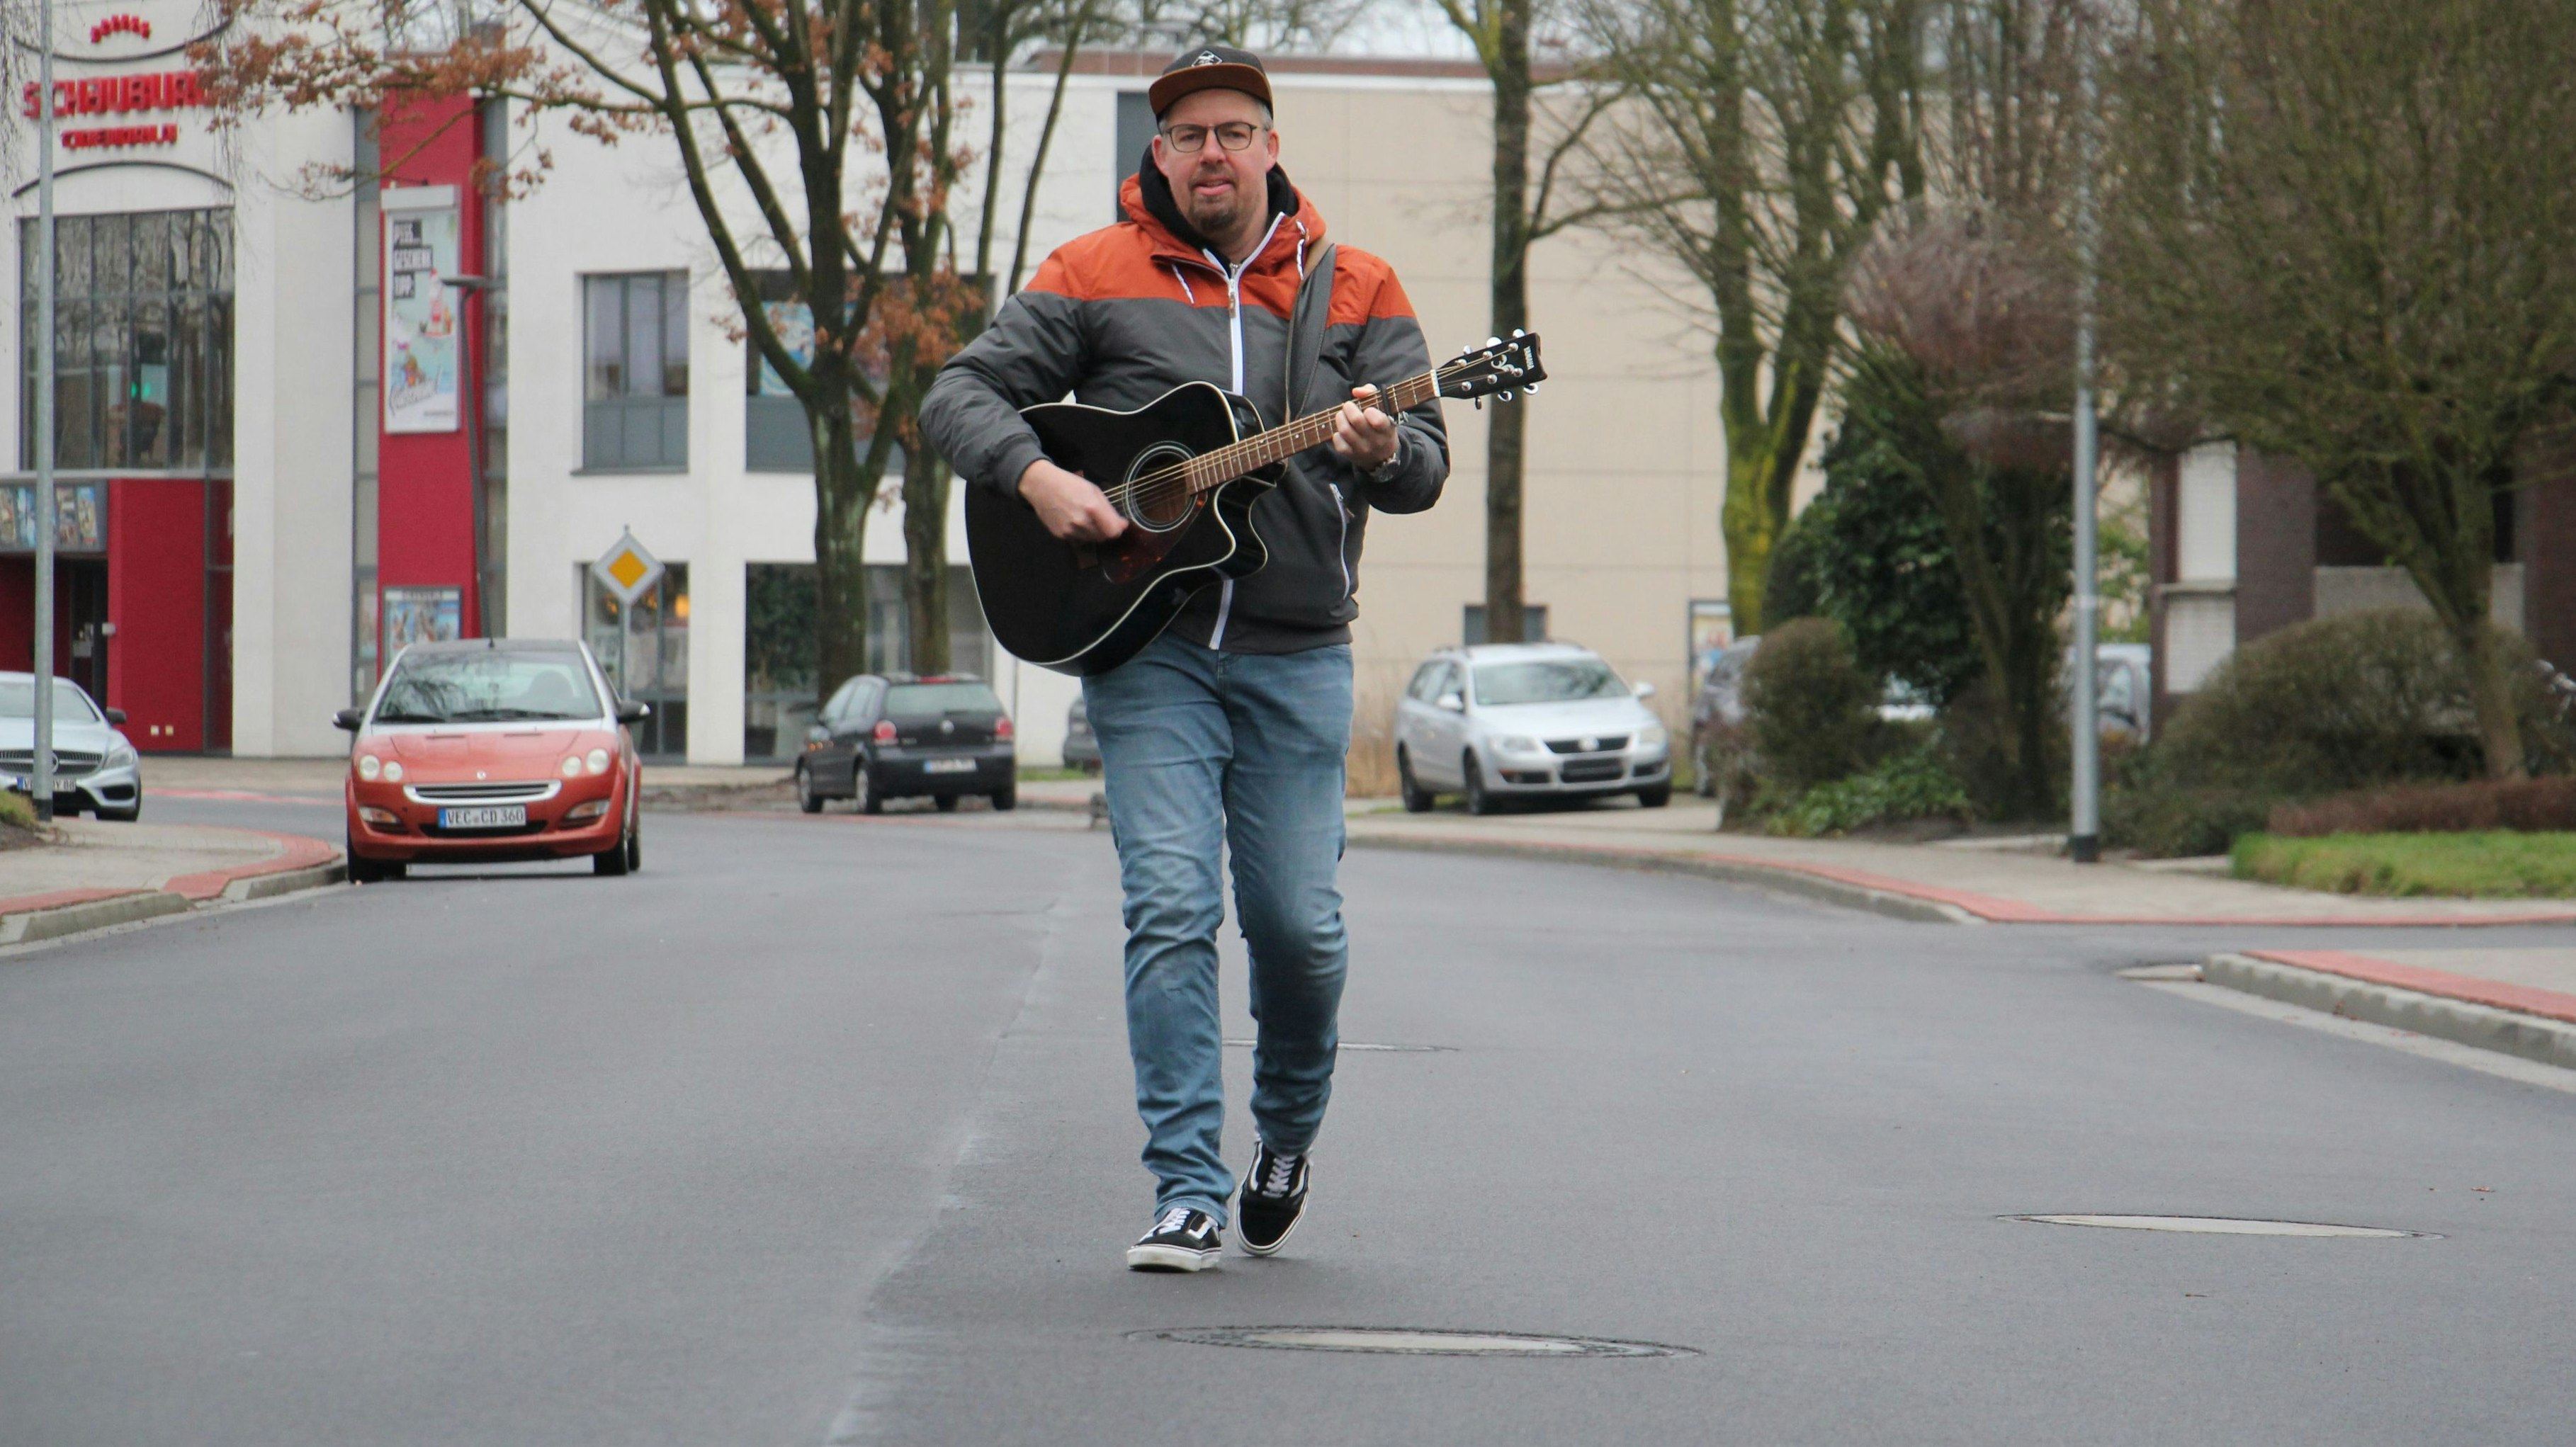 Musik über leer gefegte Straßen: Liedermacher Florian Voigt geht in seinem neuen Song auf die Auswirkungen des aktuellen Lockdowns ein. Foto: Speckmann